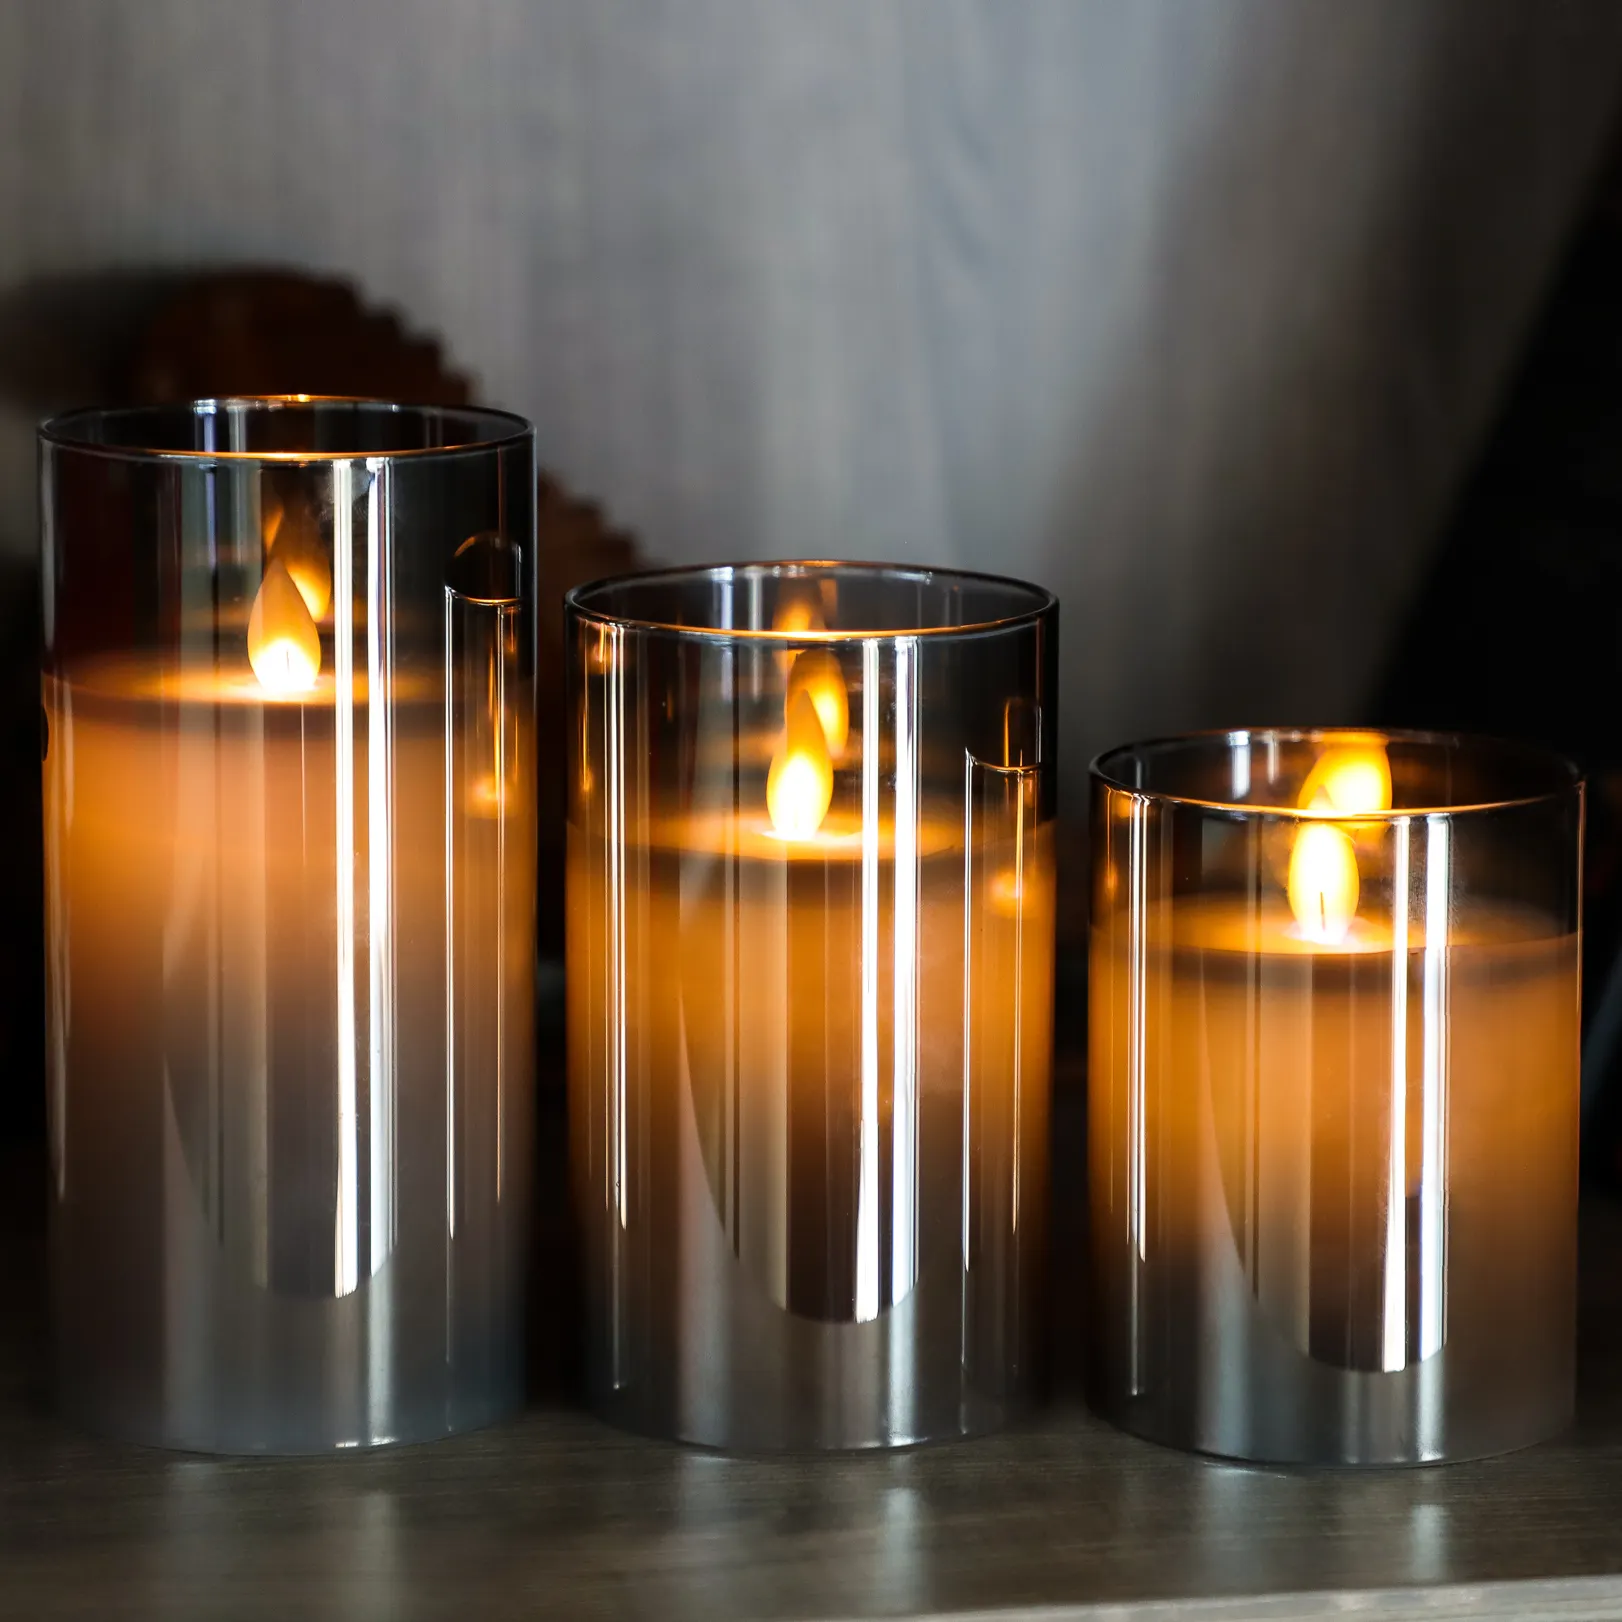 Bougie LED sans flamme 3D pot en verre gris ambre set 3 bougies bougies à led en cire de paraffine véritable avec télécommande pile 2AA